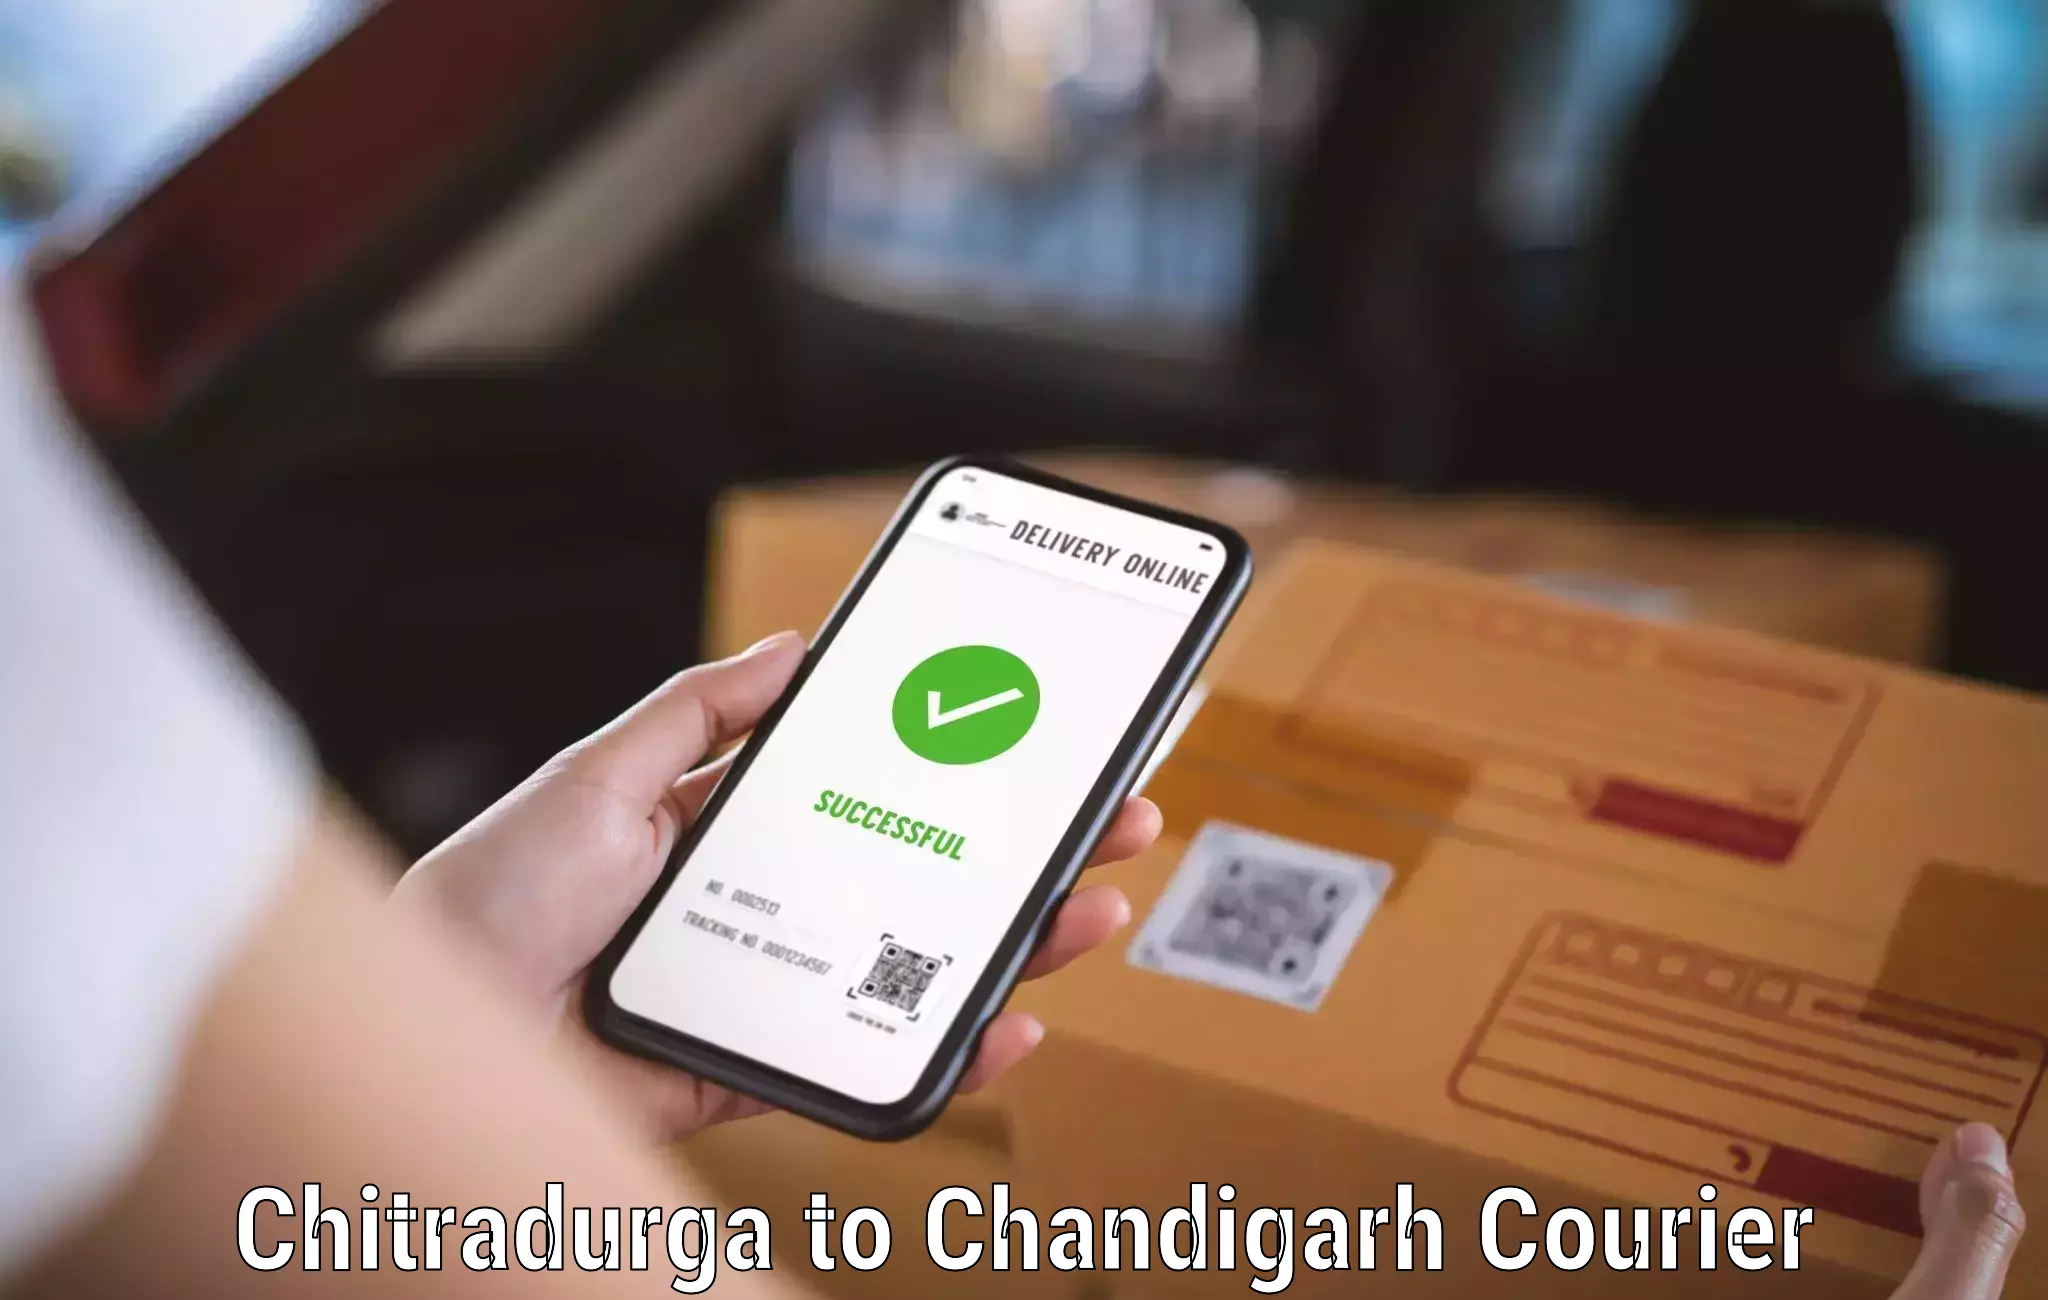 Courier service comparison Chitradurga to Chandigarh